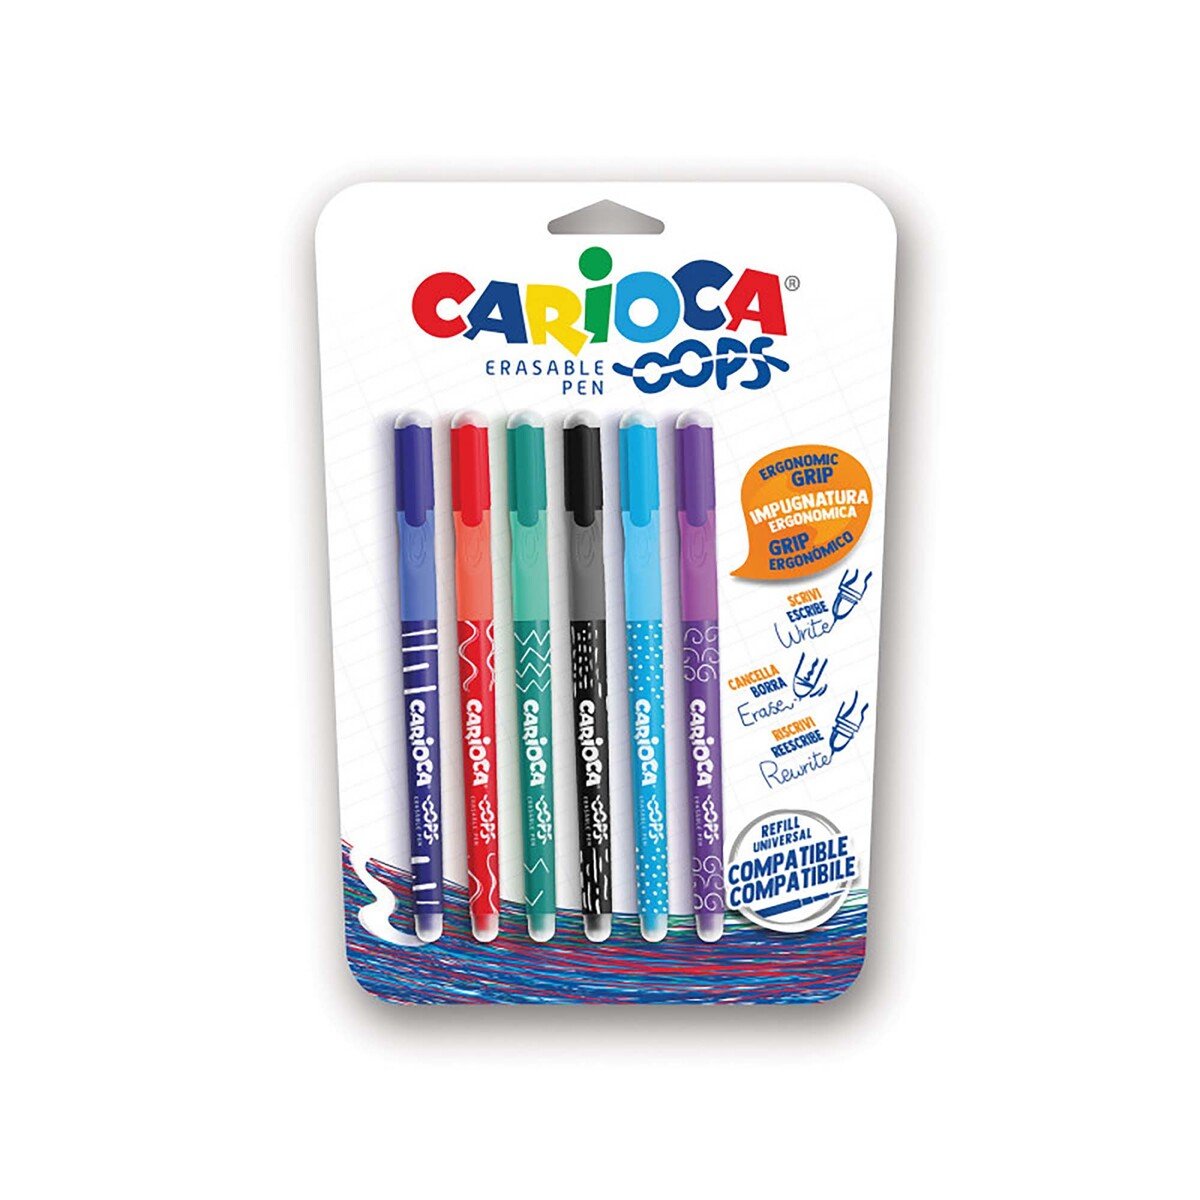 Carioca Erasable Pen OOPS Blister 6pcs Set Assorted